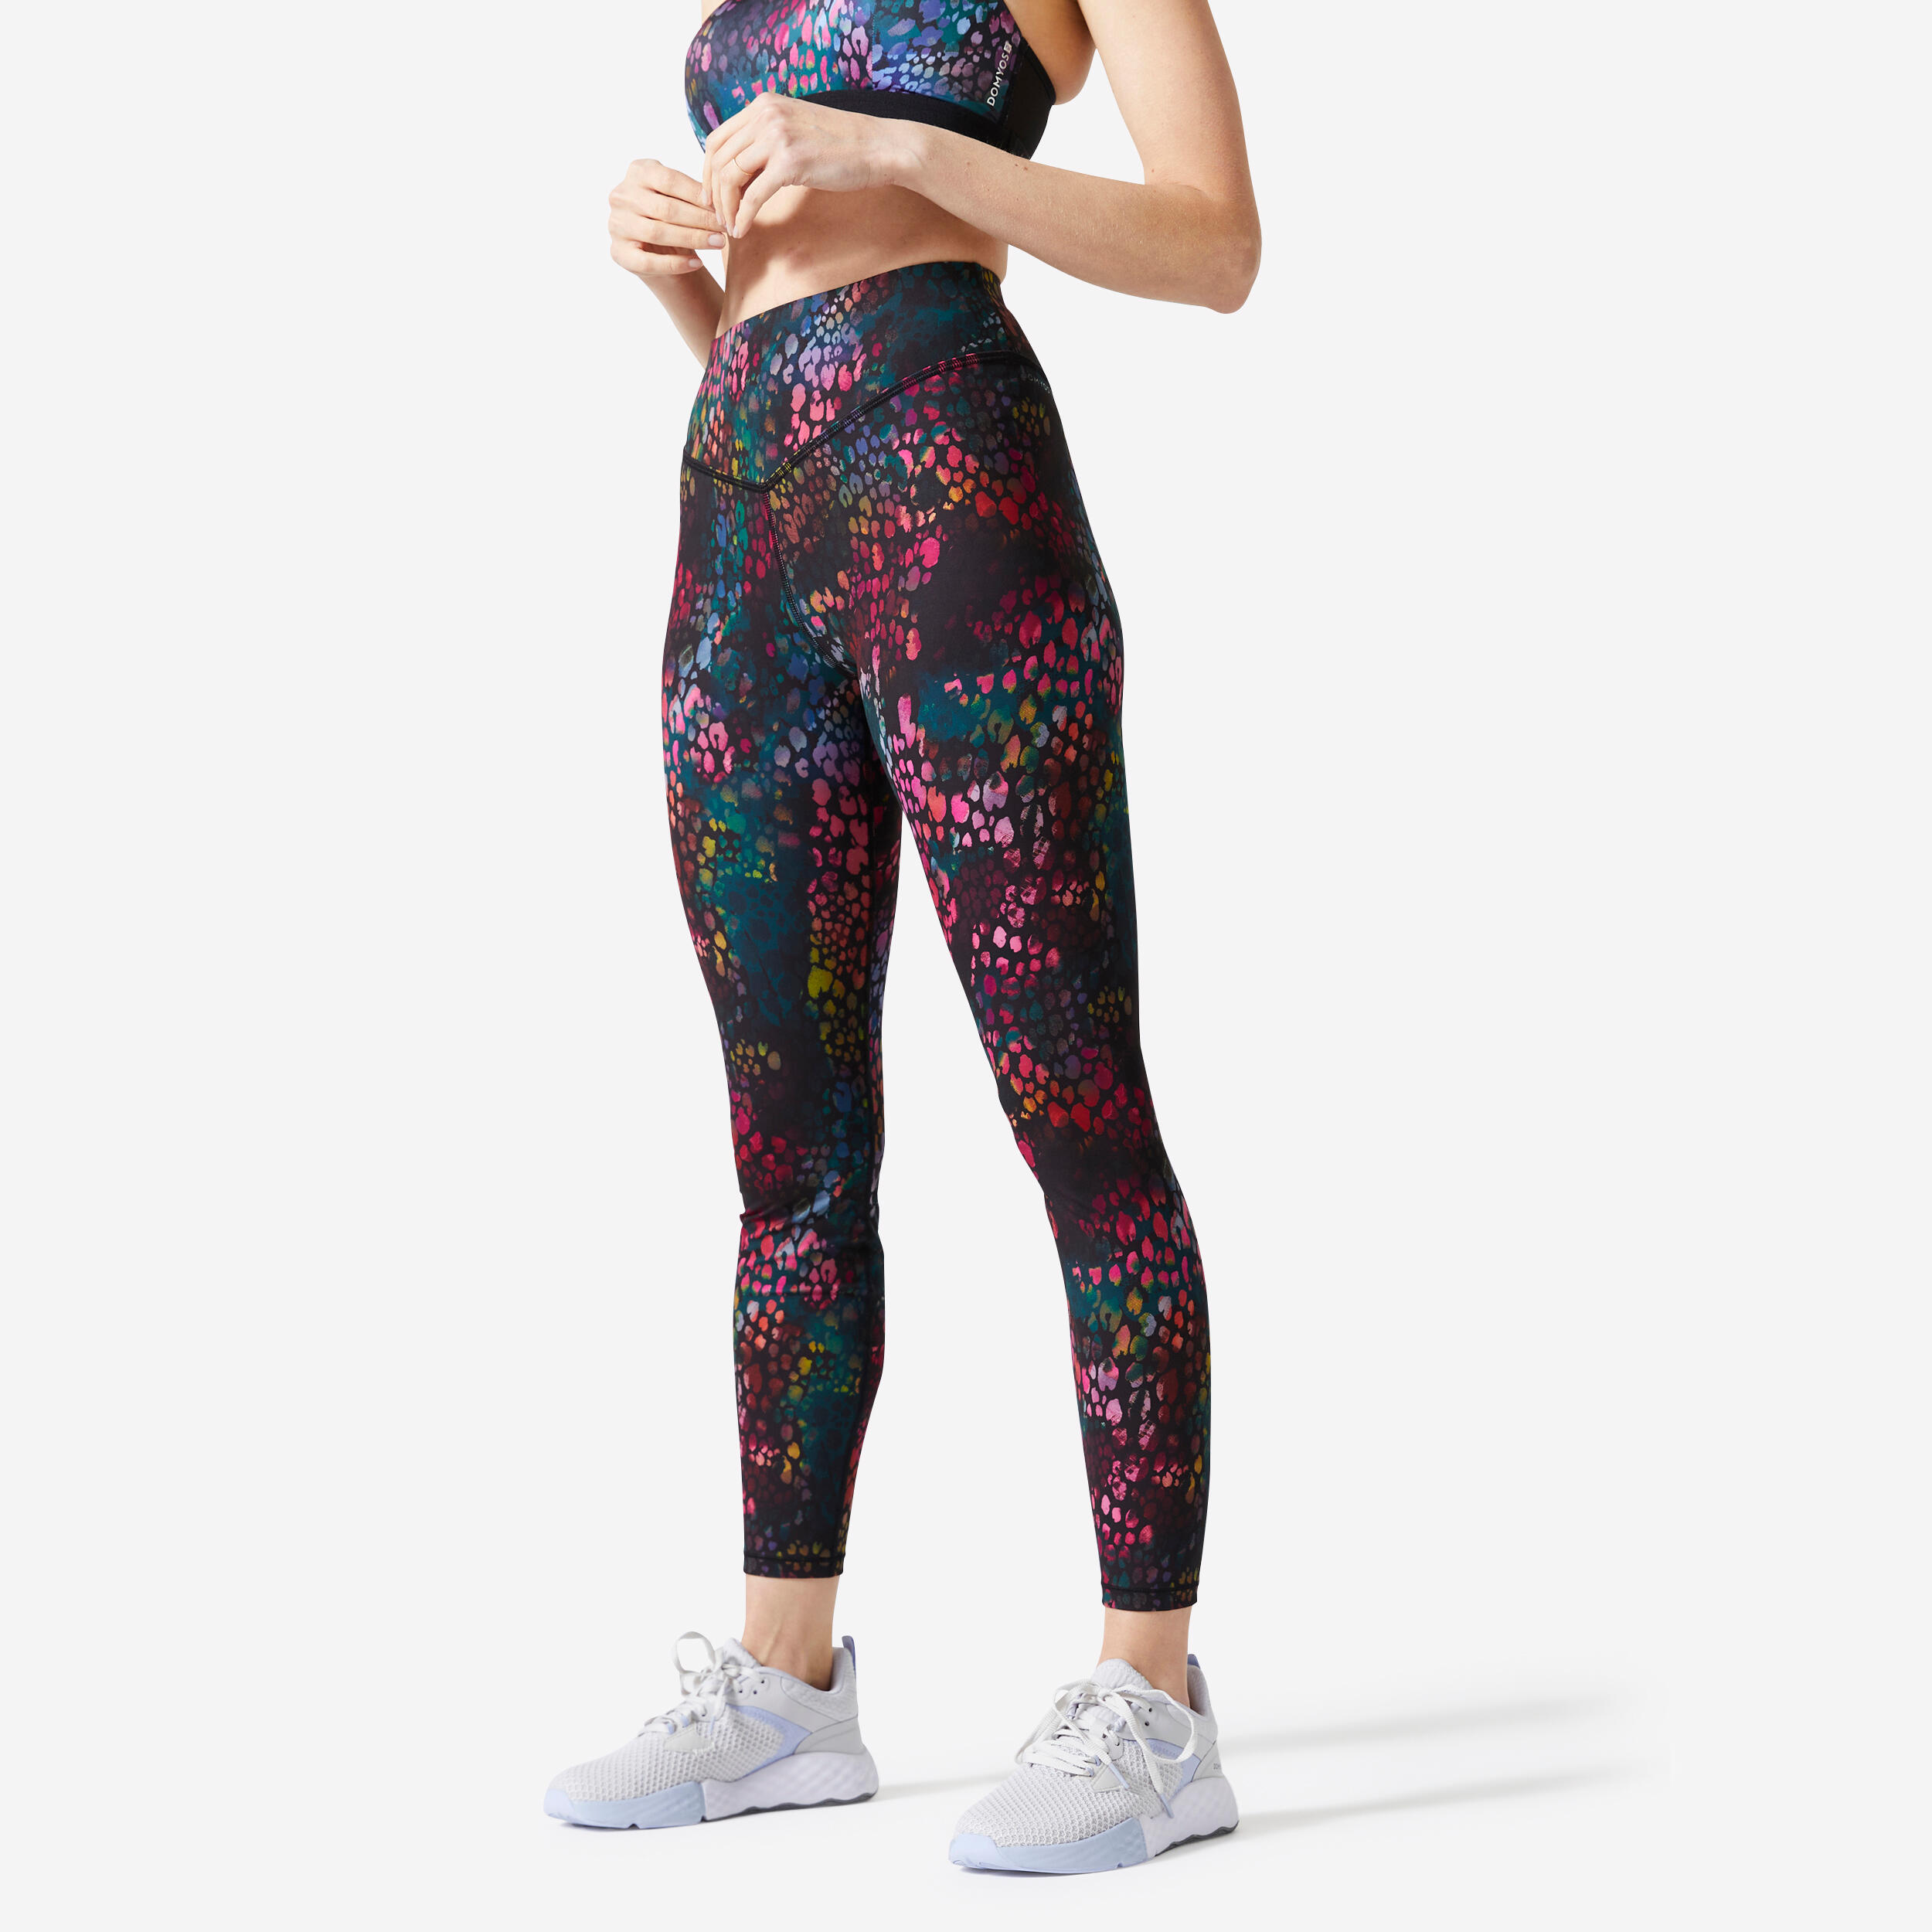  Nike - Women's Activewear Leggings / Women's Sportswear